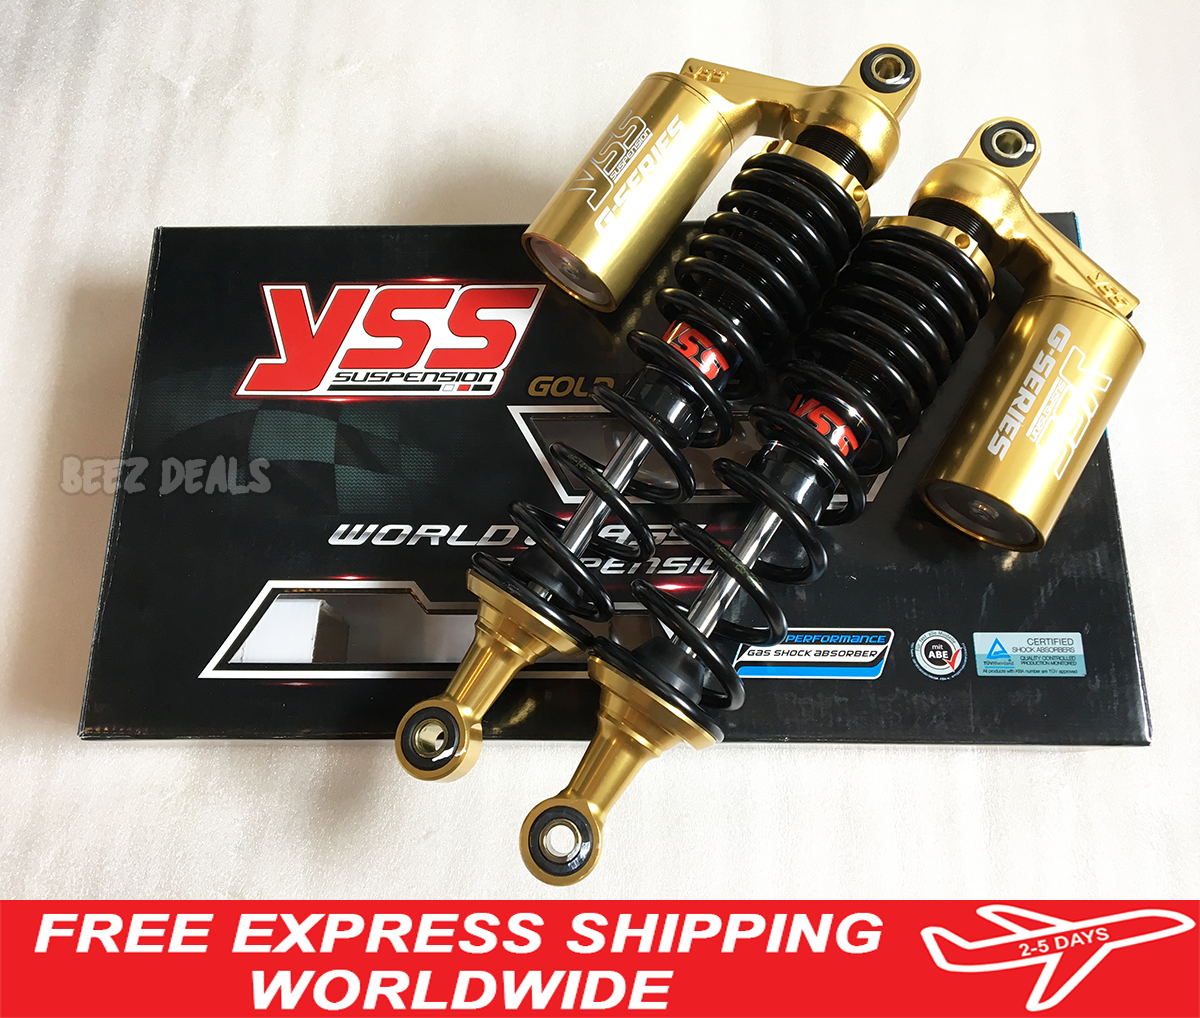 YSS Gas Shocks Absorber Suspension Adjustable Gold JB02 JB03 Honda Monkey  125